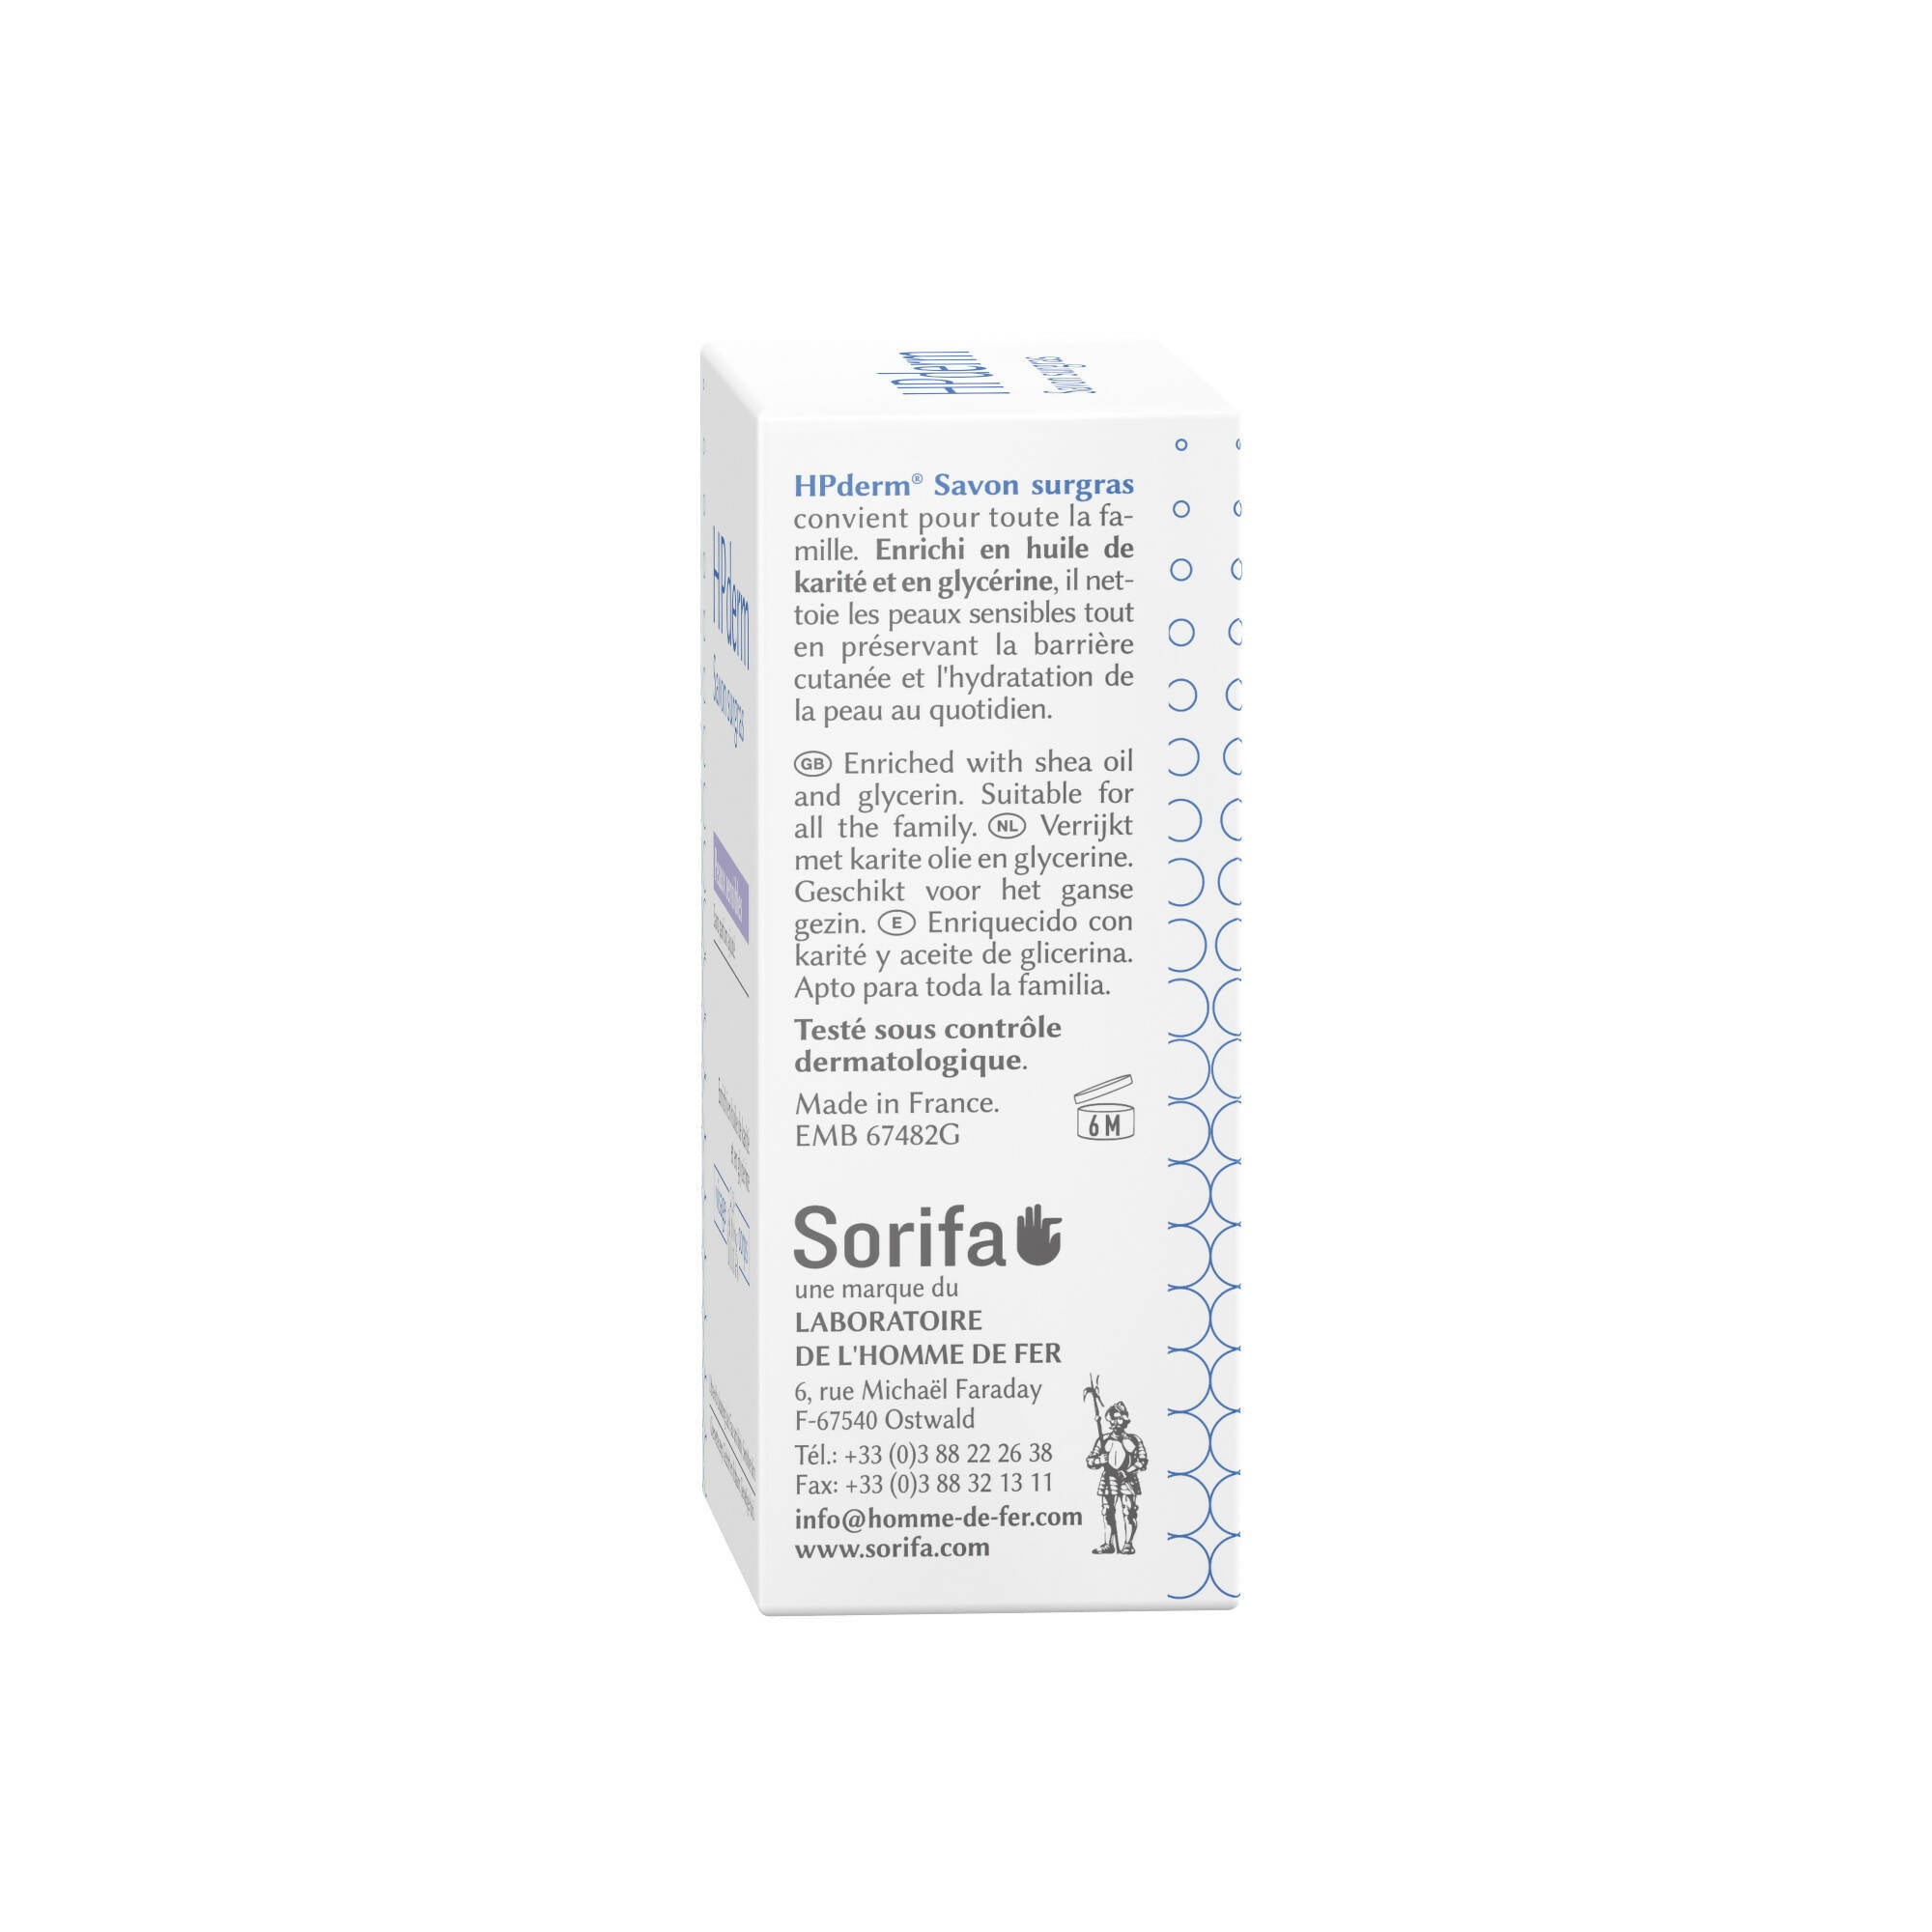 SORIFA – 3er-Set – HPderm Surgras-Seife – Empfindliche Haut – 99,95 % natürliche Inhaltsstoffe – Angereichert mit Sheaöl und Glycerin – Geeignet für die Familie, auch für Kleinkinder – Neutraler pH-Wert, frei von Duftstoffen – Riegel 150 g